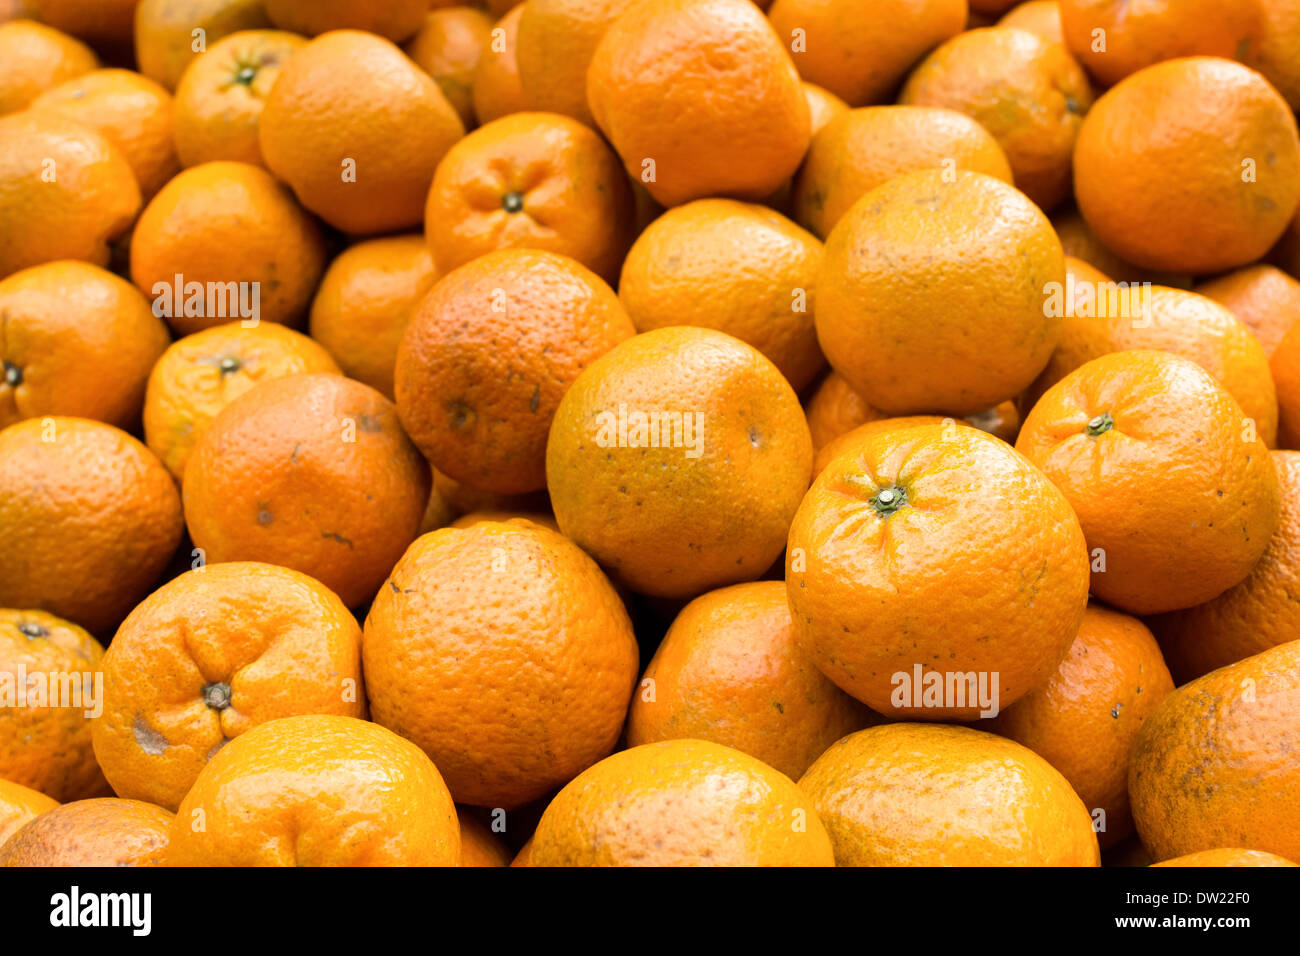 Tangerine Stock Photo